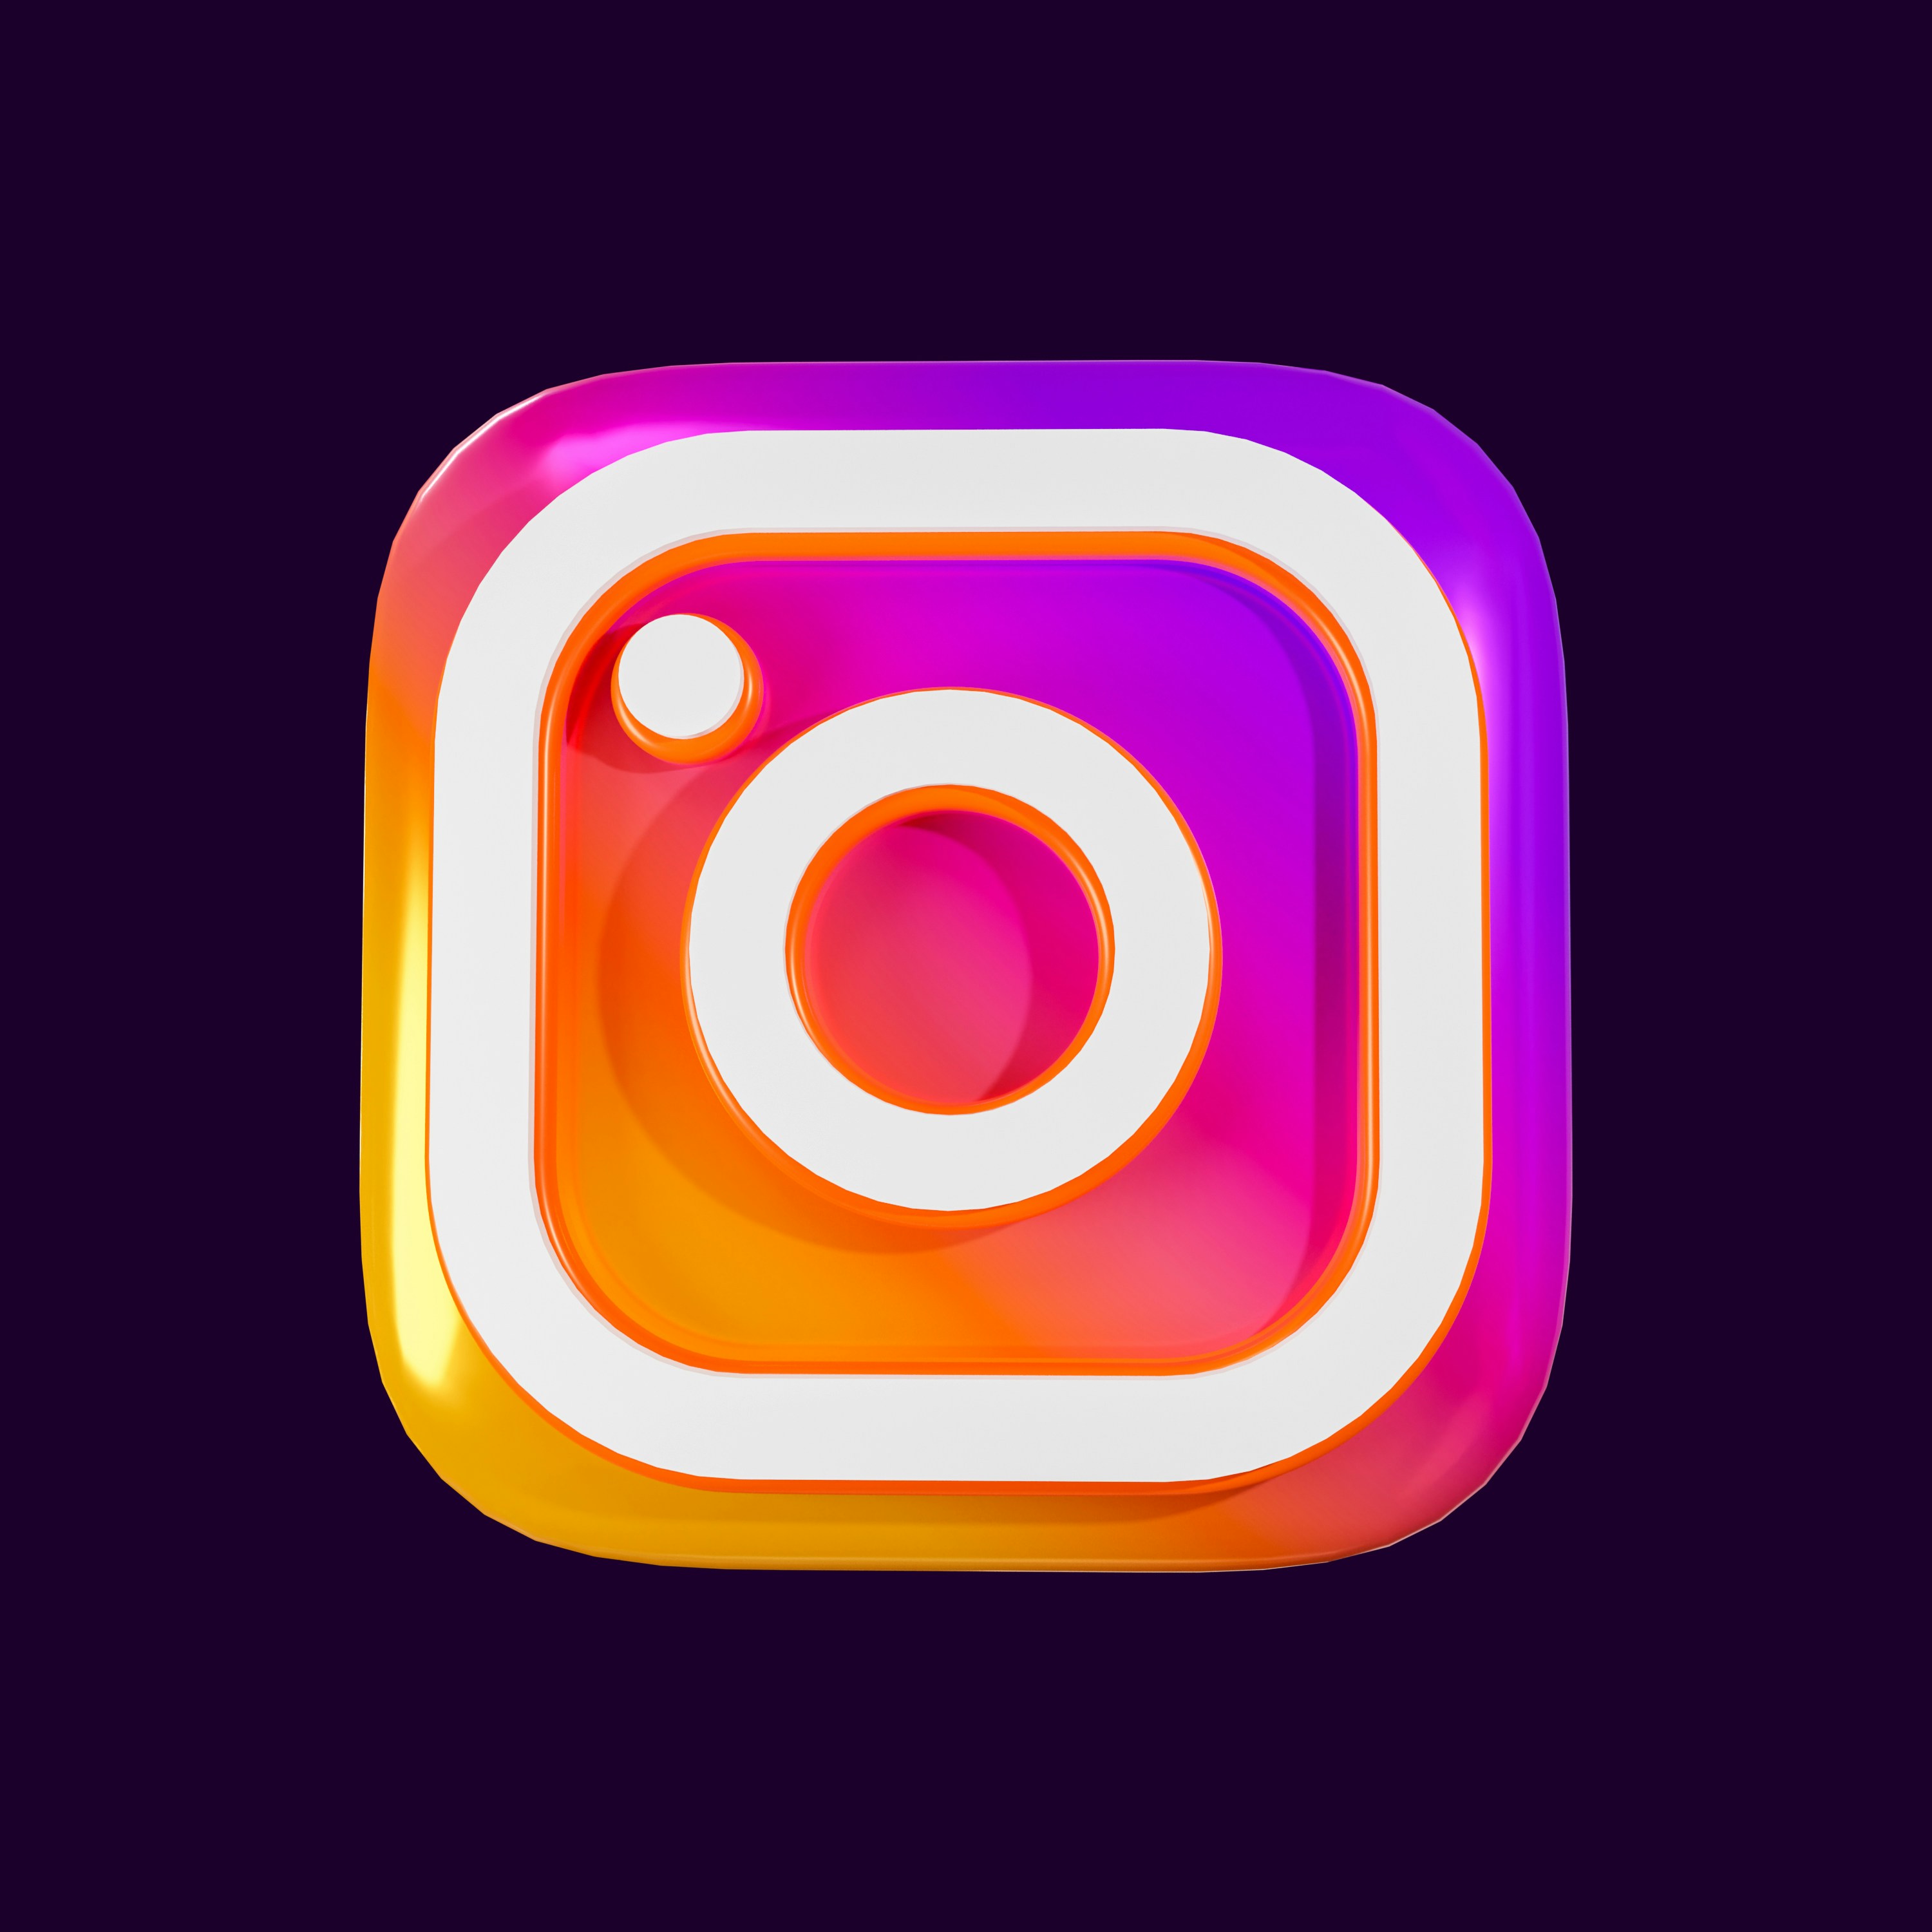 Instagram 3D Render Icon for design element